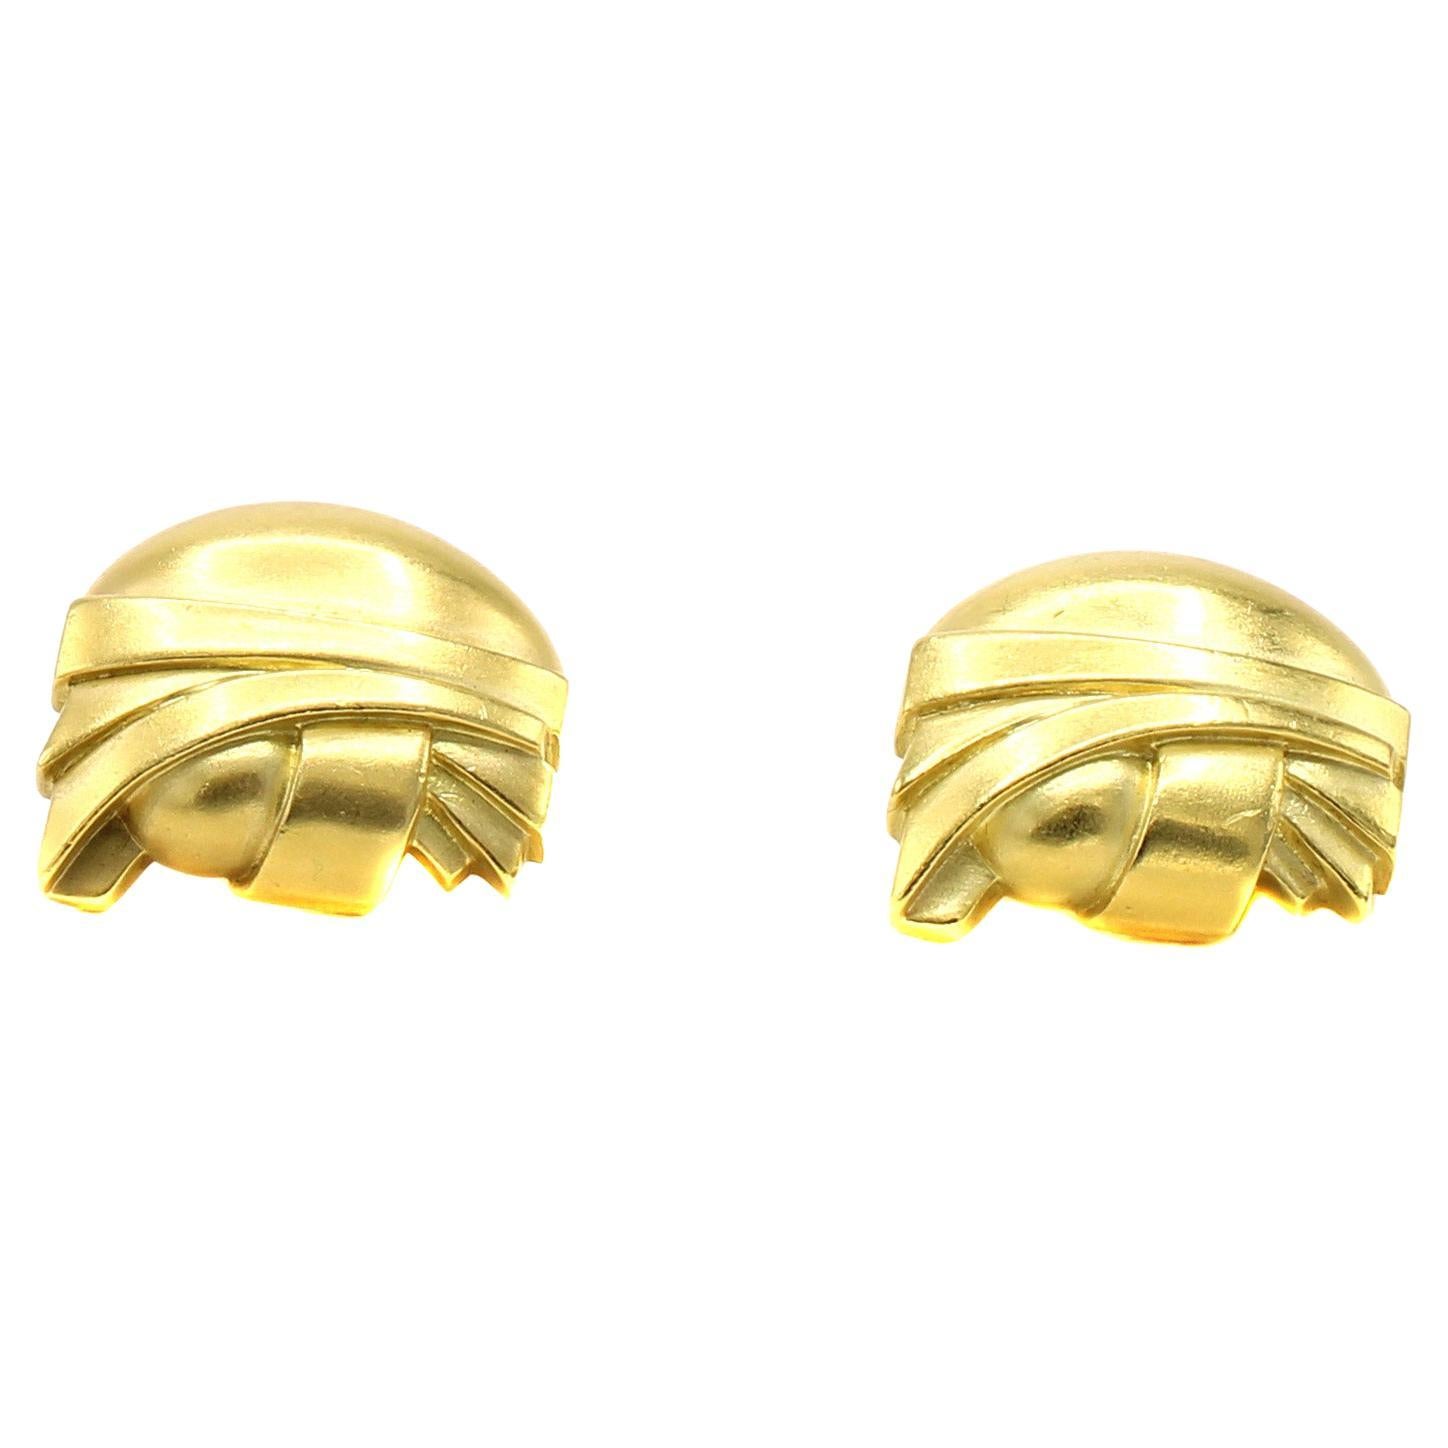 Diese großen und beeindruckenden Ohrclips wurden von dem amerikanischen Juwelier Barry Kieselstein-Cord entworfen und meisterhaft von Hand gefertigt. Sie sind ein Blickfang für jedes Ohr. Das unverwechselbare matte Finish des grün getönten Goldes